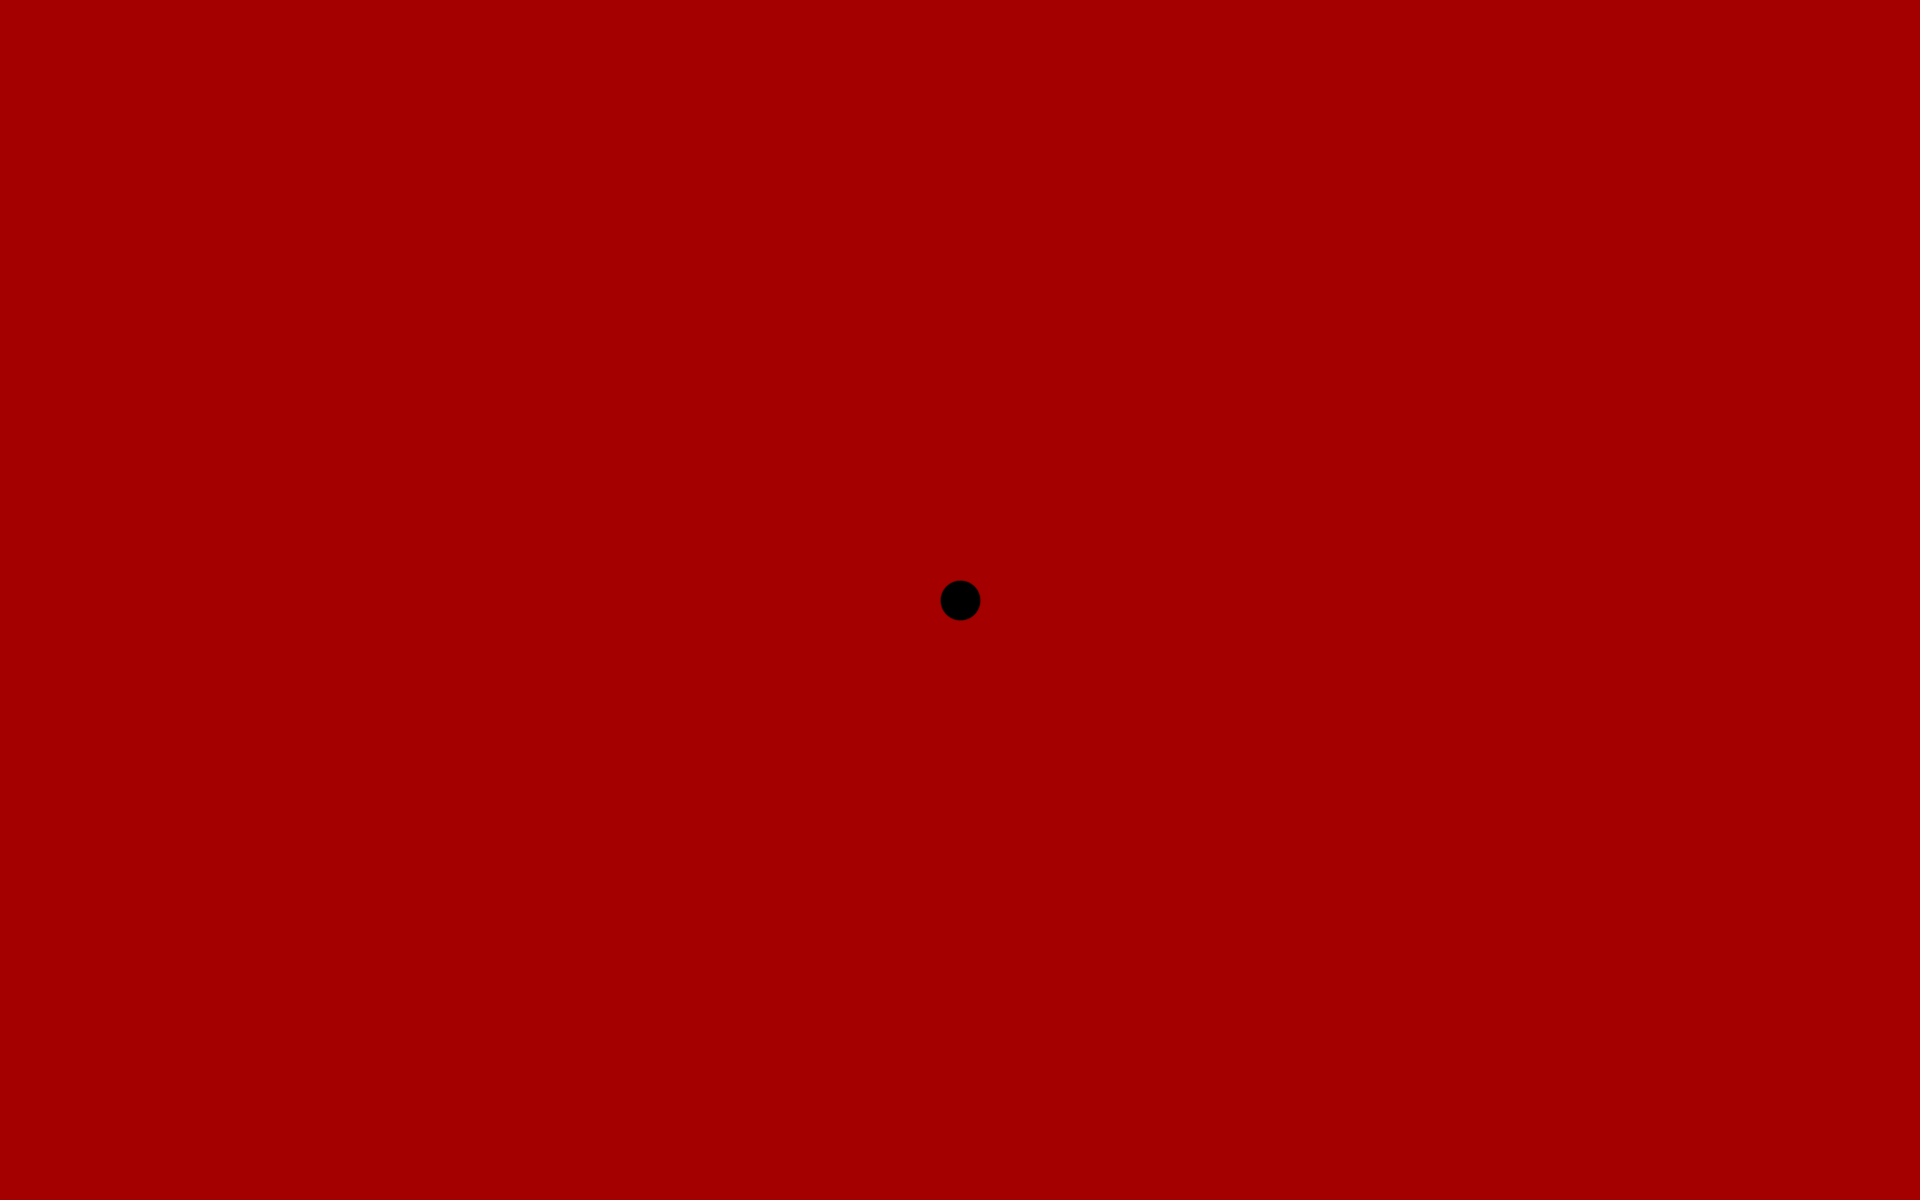 Обои Черная точка на красном фоне.